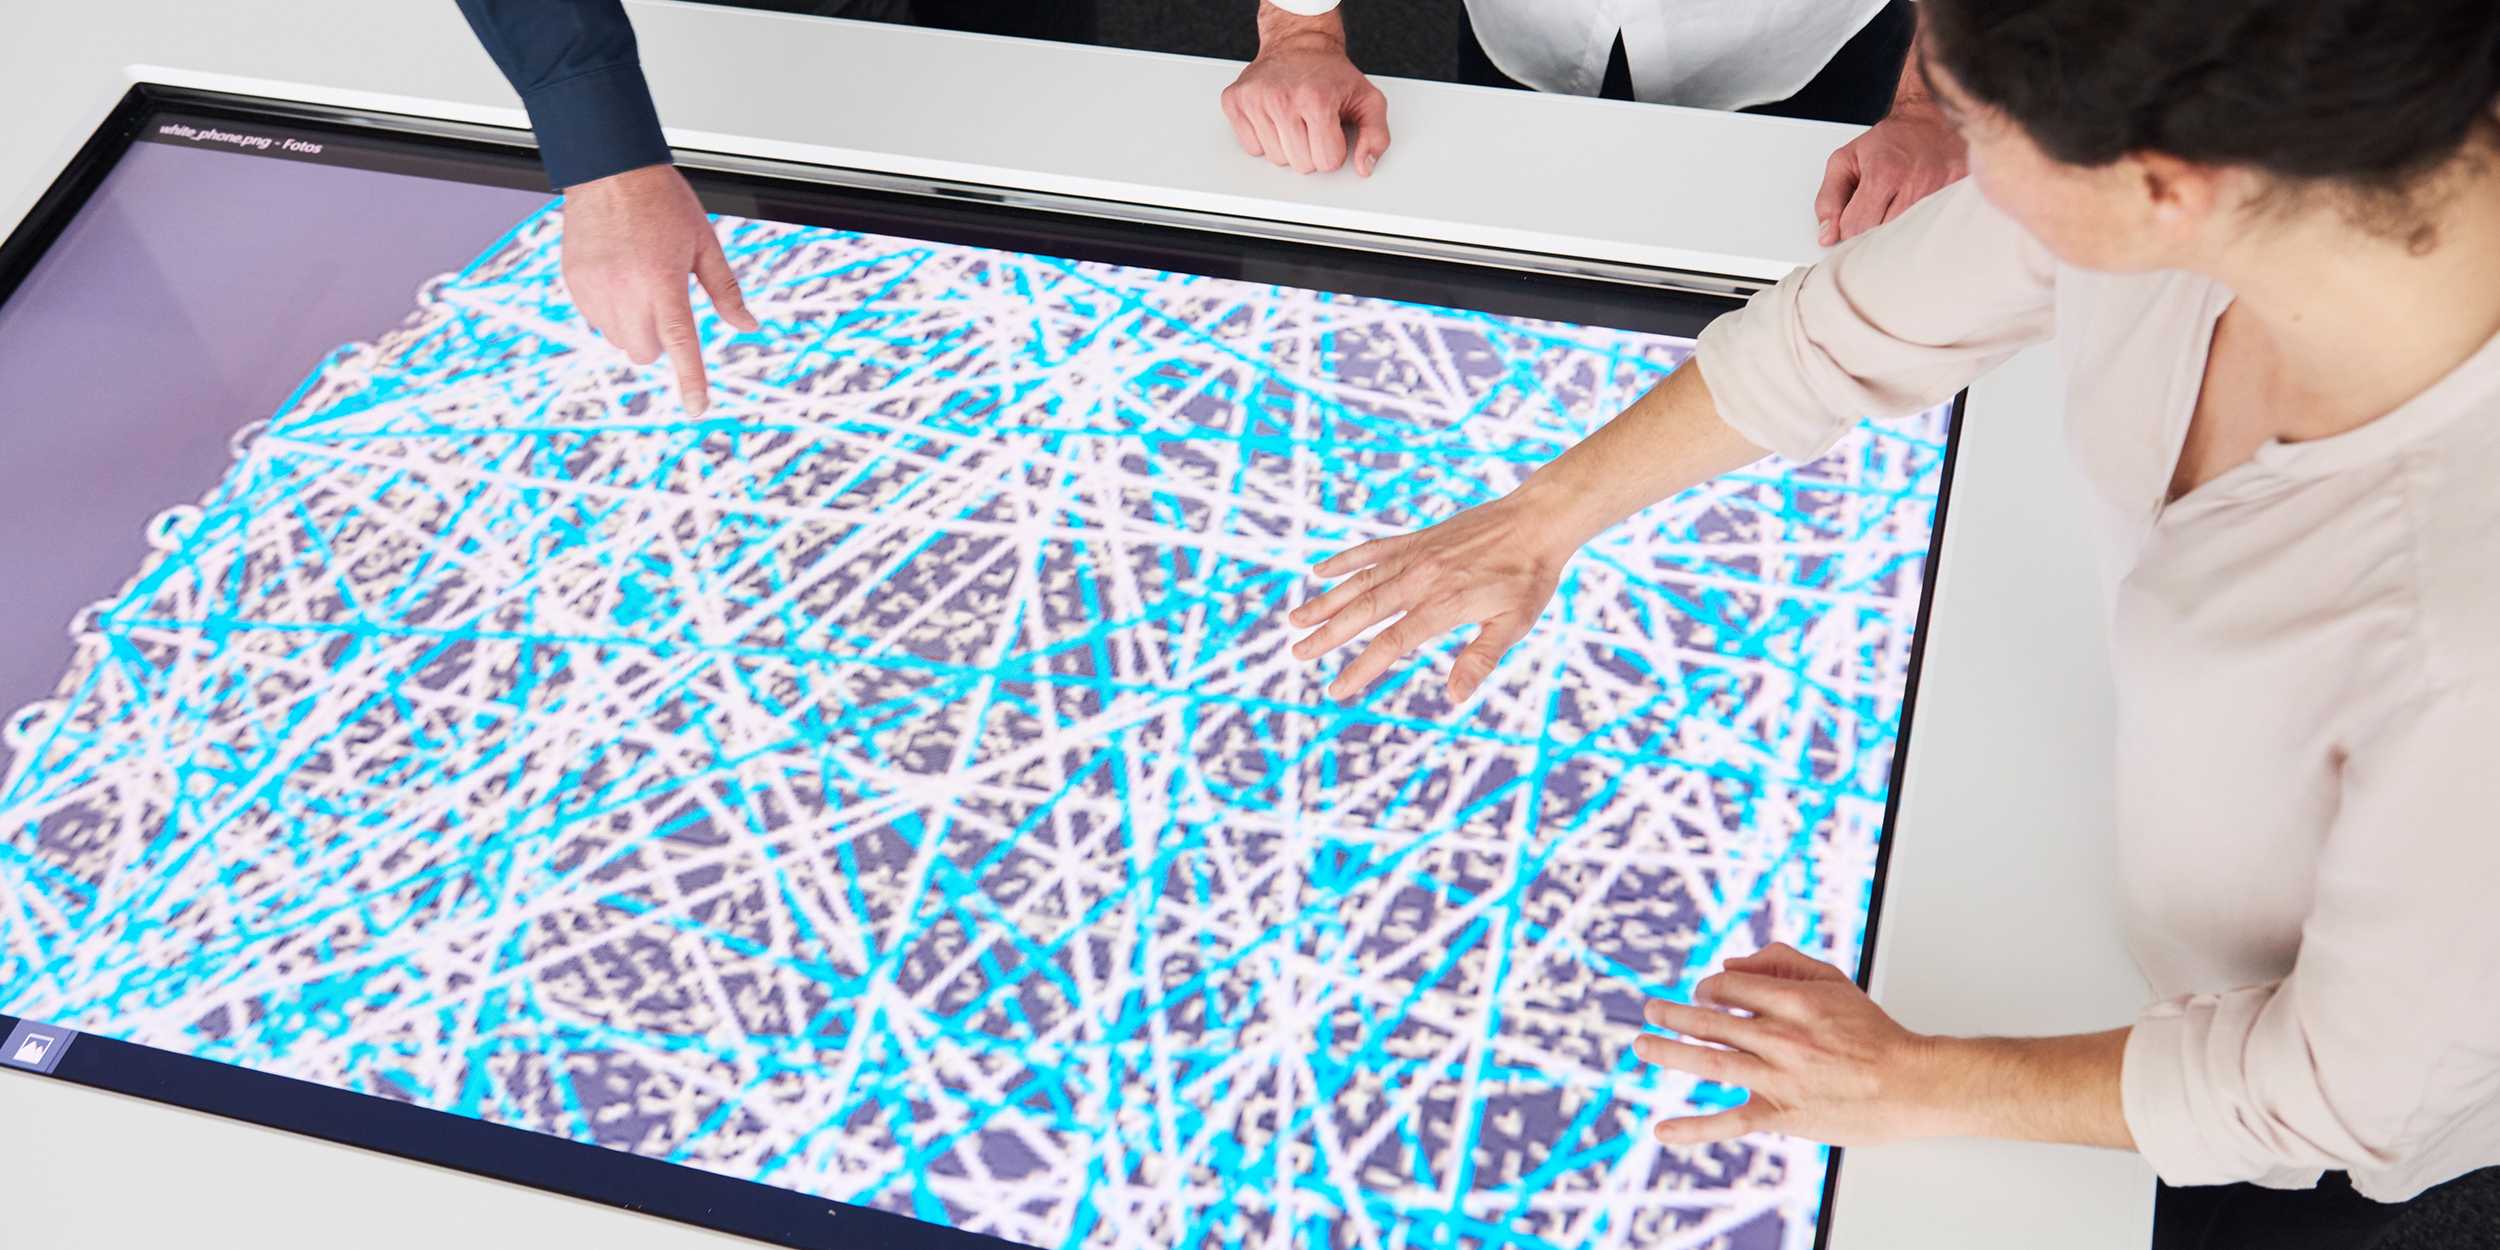 Zwei Personen zeigen mit ihren Händen auf einen Bildschirm auf dem ein Netzwerk aus weissen und blauen Linien zu erkennen is.